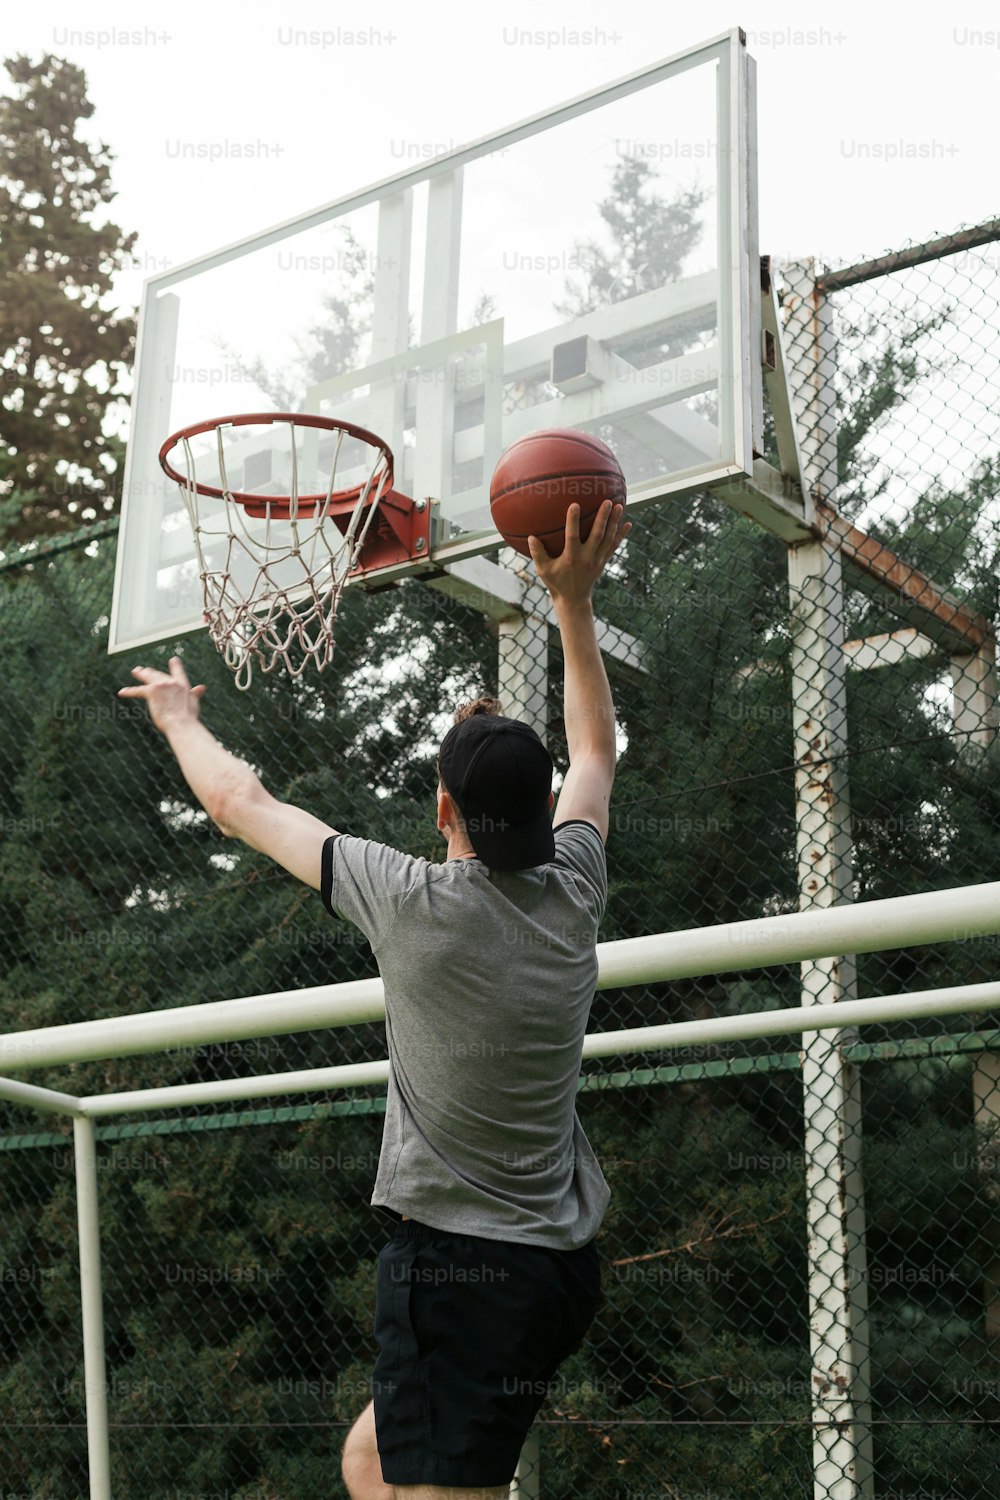 a man dunking a basketball into a basketball hoop